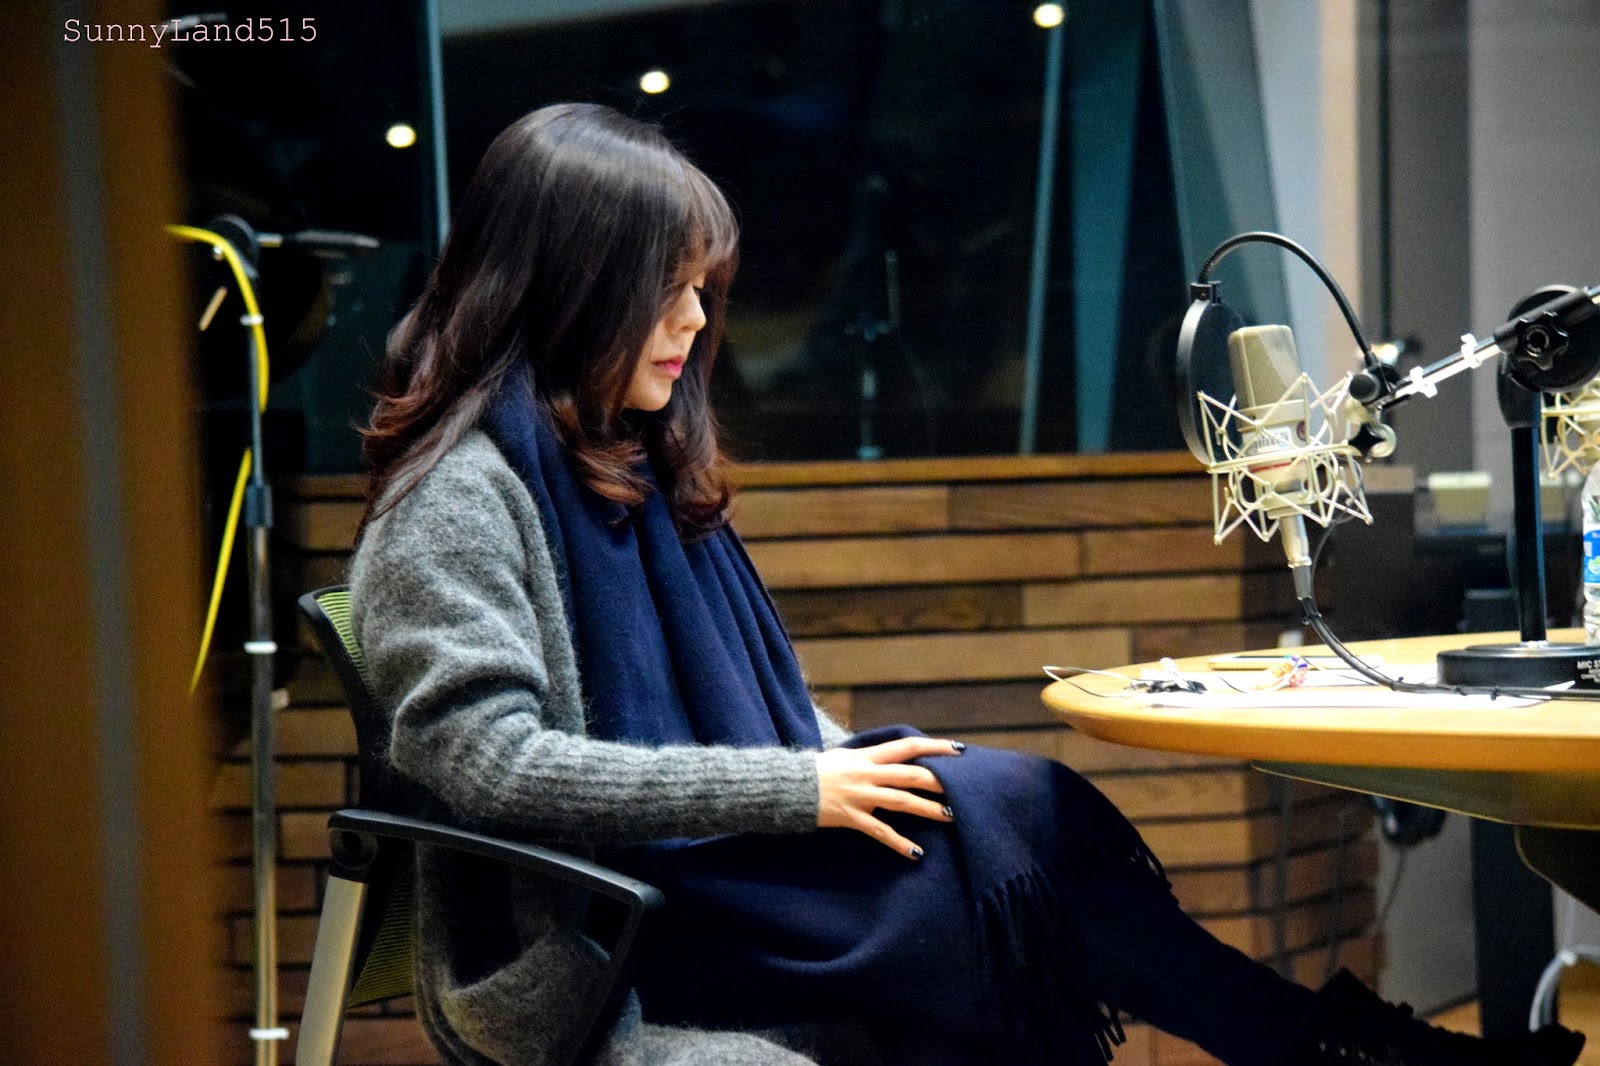 [OTHER][06-02-2015]Hình ảnh mới nhất từ DJ Sunny tại Radio MBC FM4U - "FM Date" - Page 10 DSC_0195_Fotor